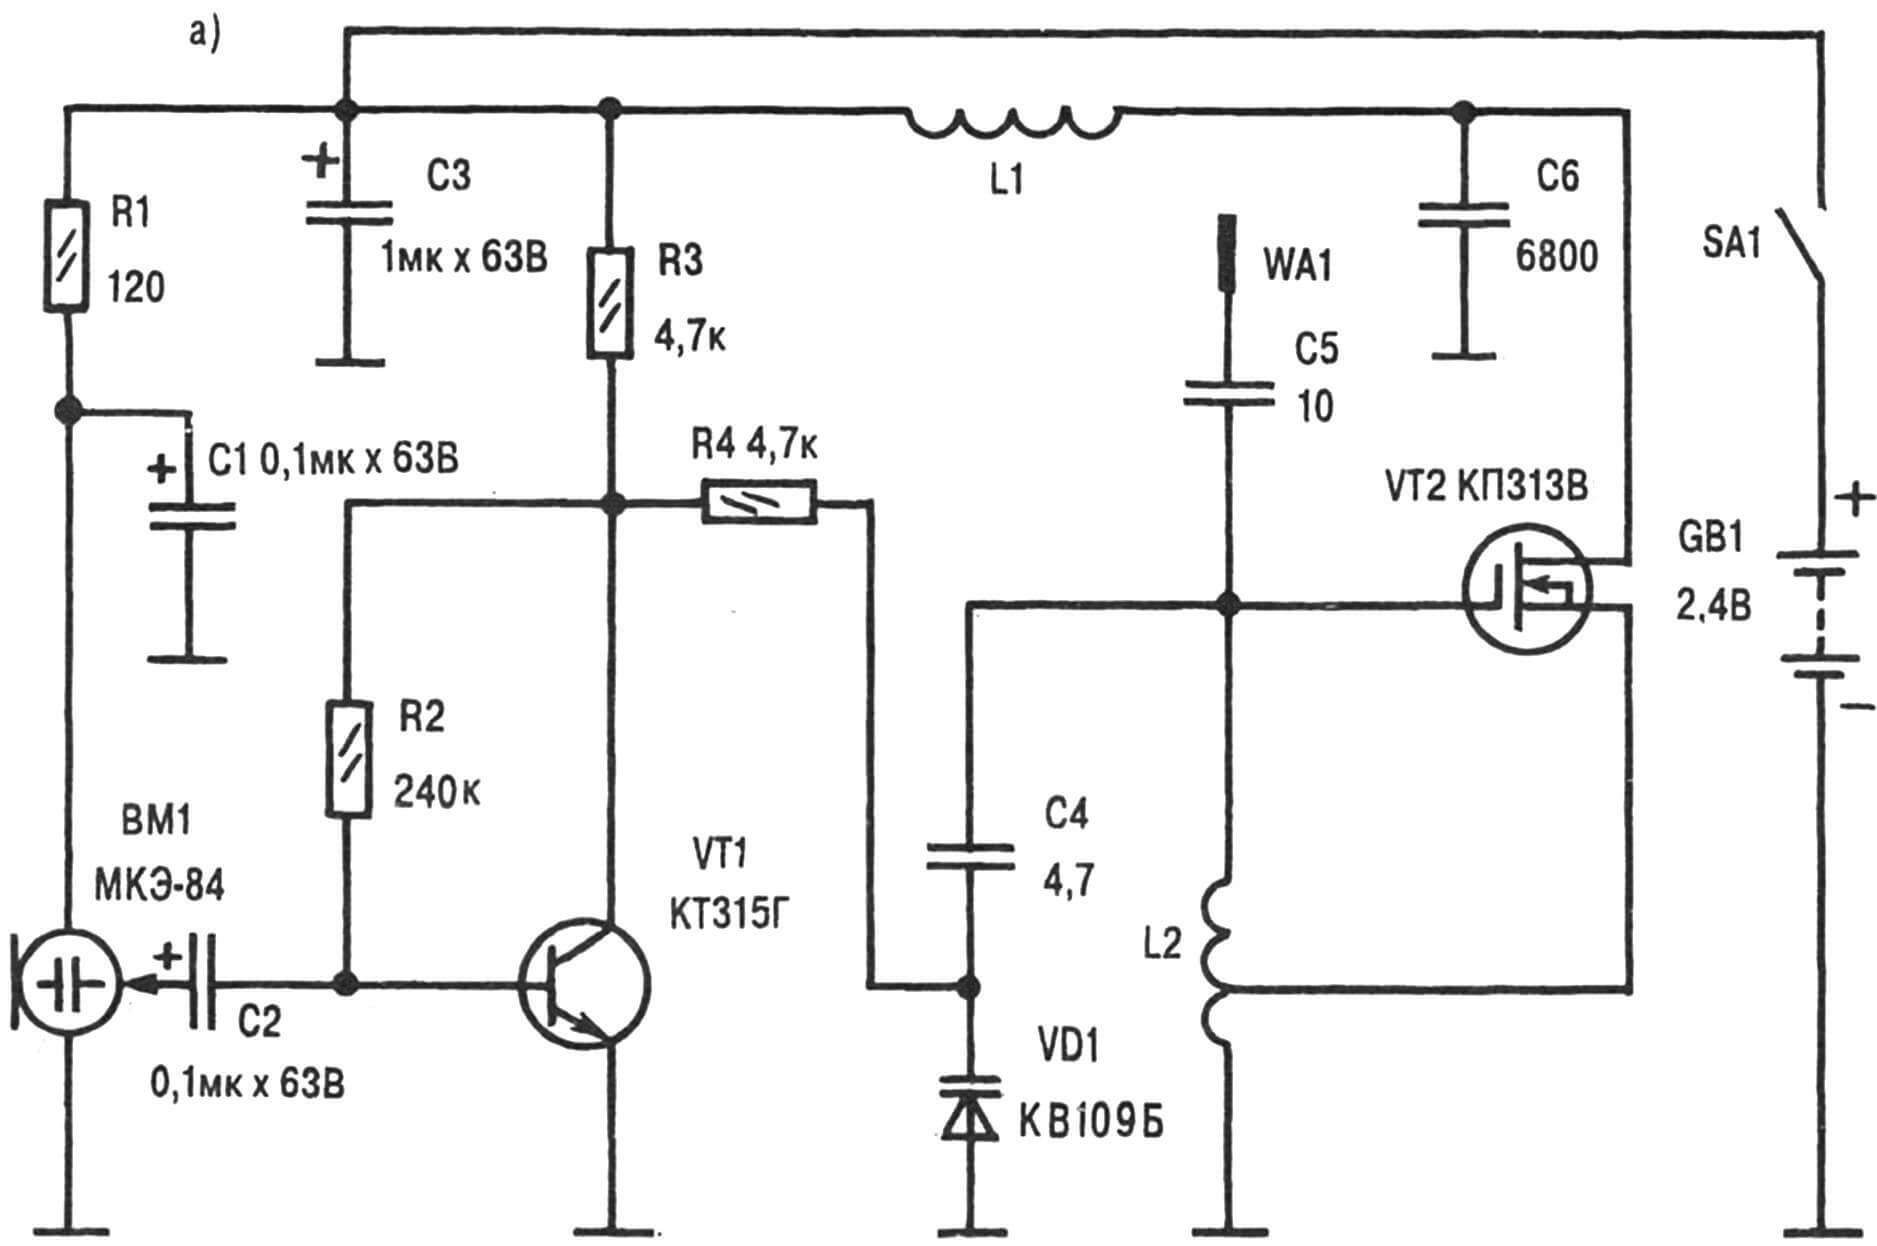 Принципиальная электрическая схема (а) и топология печатной платы (б) самодельного радиомикрофона, предназначенного для работы в FM диапазоне совместно с УКВ-ЧМ приемником.